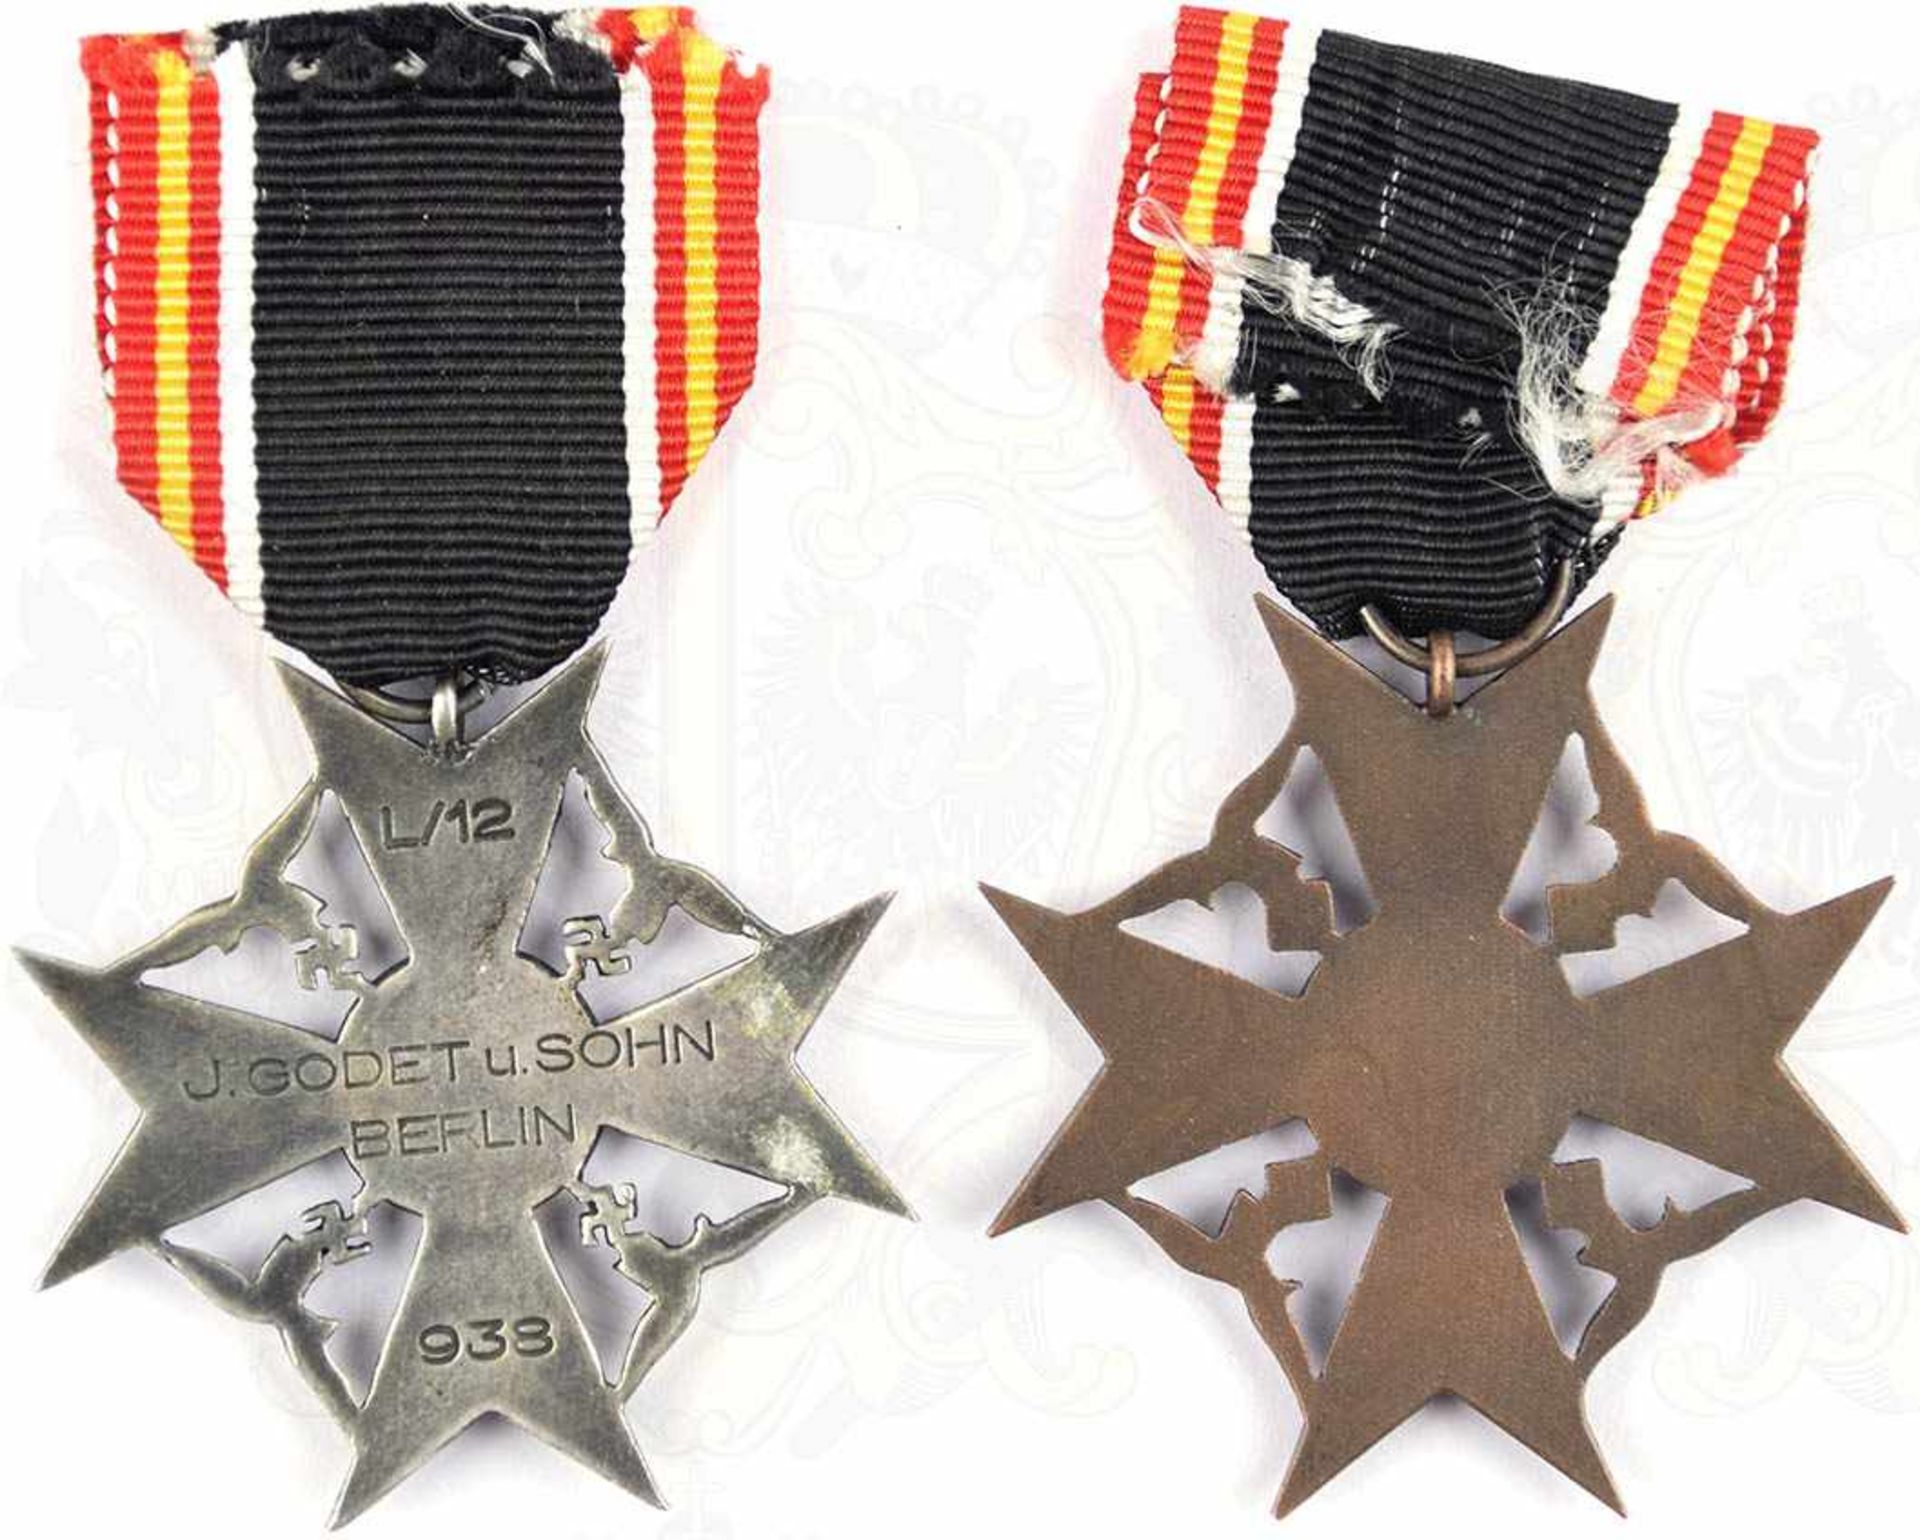 2 SPANIENKREUZE FÜR HINTERBLIEBENE, in Silber u. Bronze, Weißmetall/Buntmetall, 1x bronziert, 1x - Bild 2 aus 2